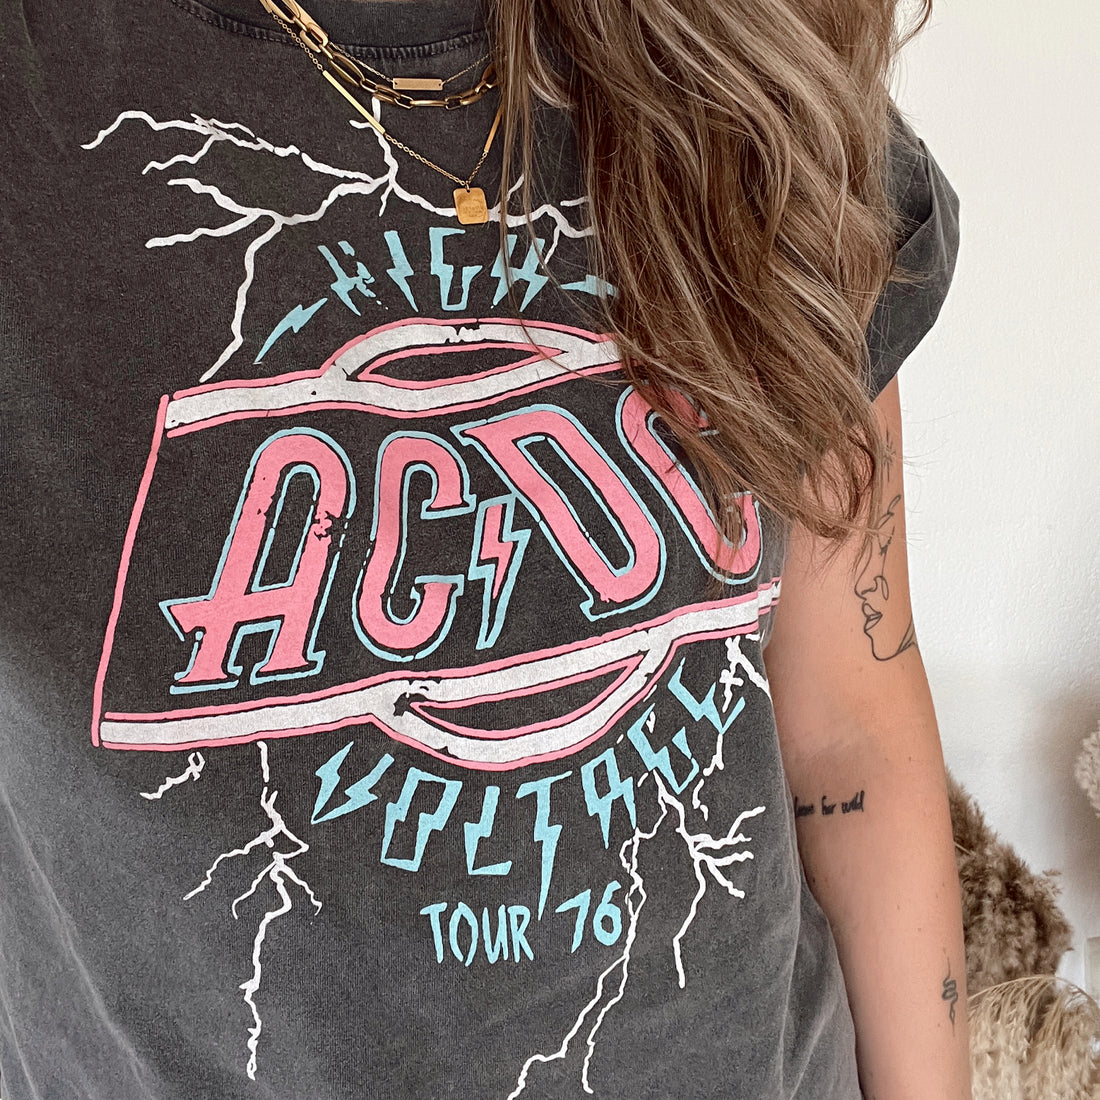 Voltage AC/DC tee washed black. Zwart gewassen oversized t-shirt met AC/DC print. Het t-shirt heeft een oversized fit en is te dragen t/m maat XL. Materiaal van het t-shirt is 100% katoen.